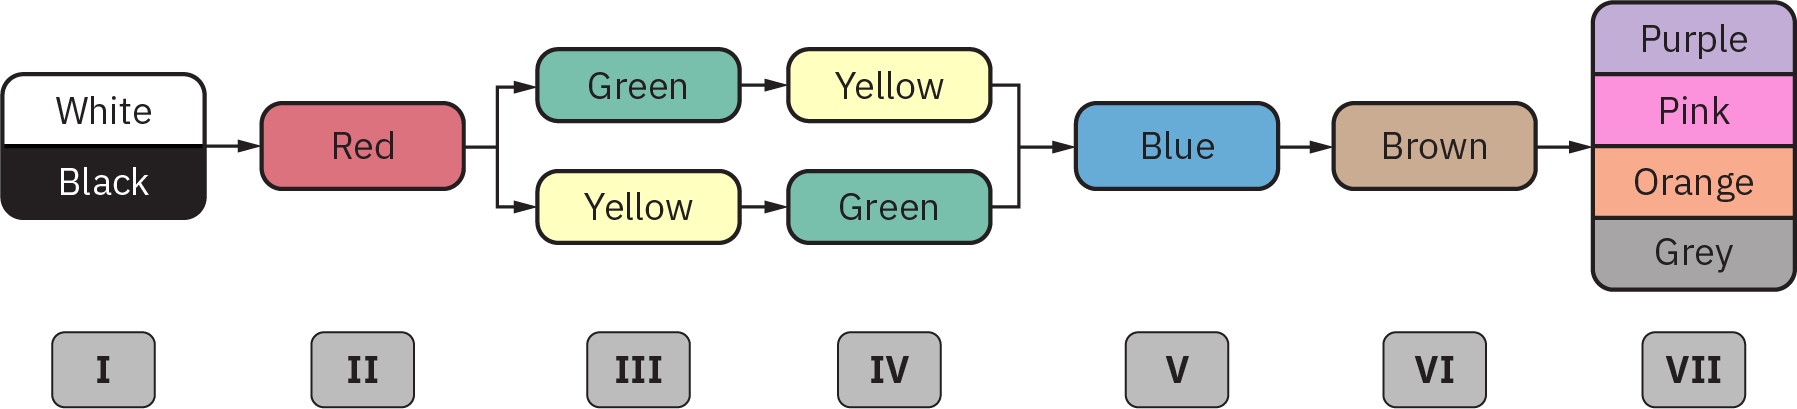 描绘以下内容的示意图：在第 1 阶段，“白色” 和 “黑色” 的标记；在第 2 阶段，“红色” 的标记；在第 3 阶段，“绿色” 和 “黄色” 的标记；在第 4 阶段，“蓝色”；在第 6 阶段，“棕色”；在第 7 阶段，“紫色”、“粉色”、“橙色” 和 “灰色””。